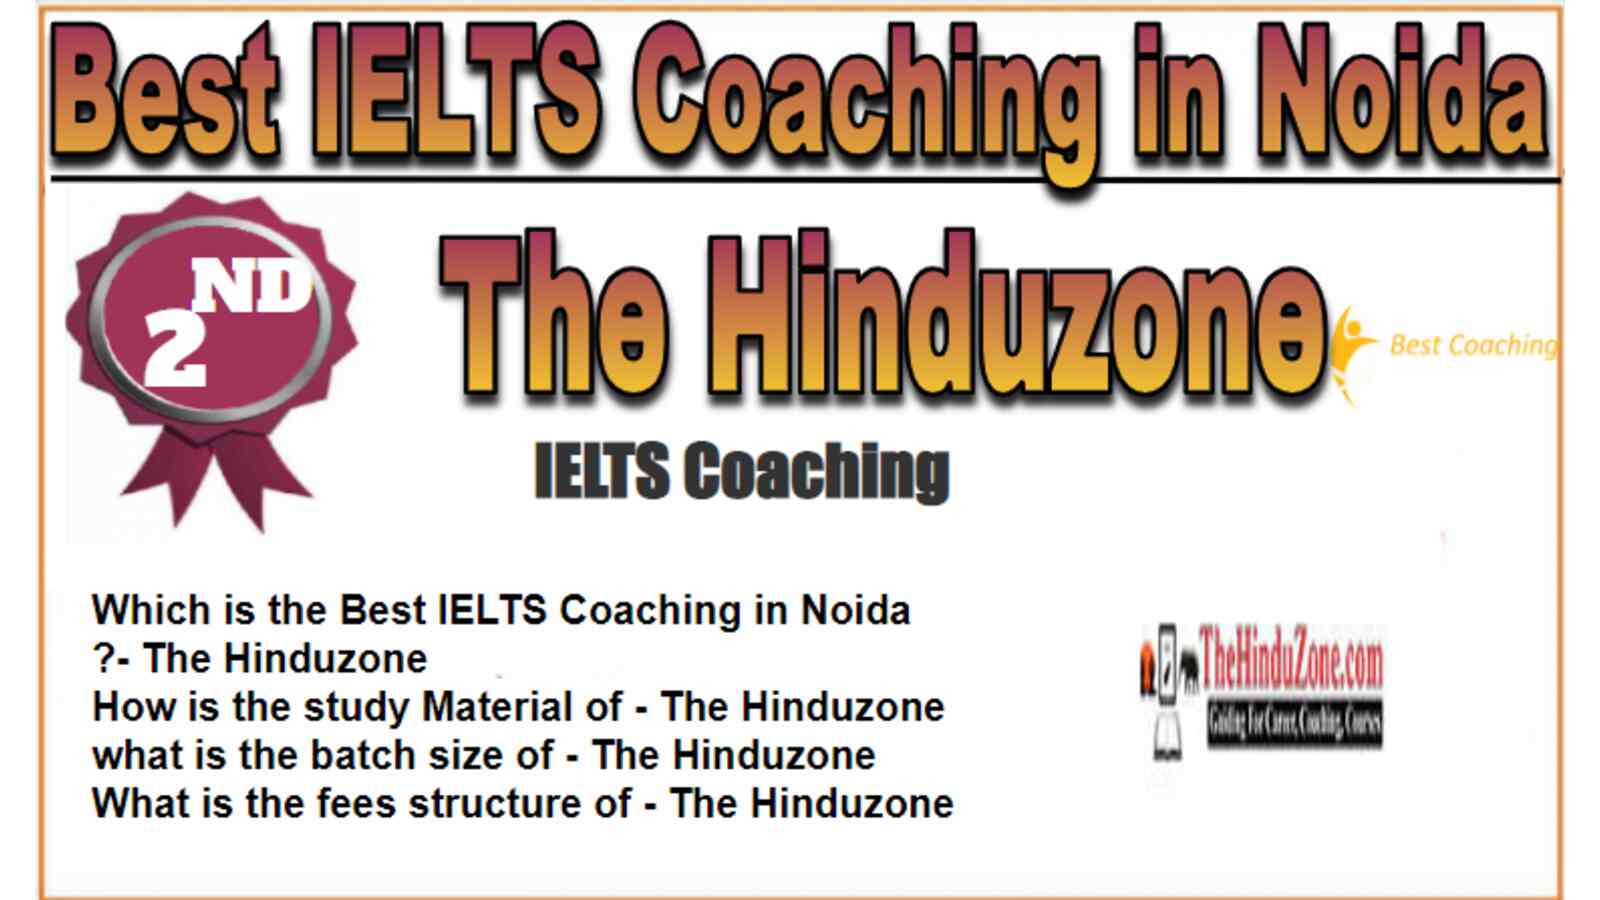 Rank 2 Best IELTS Coaching in Noida